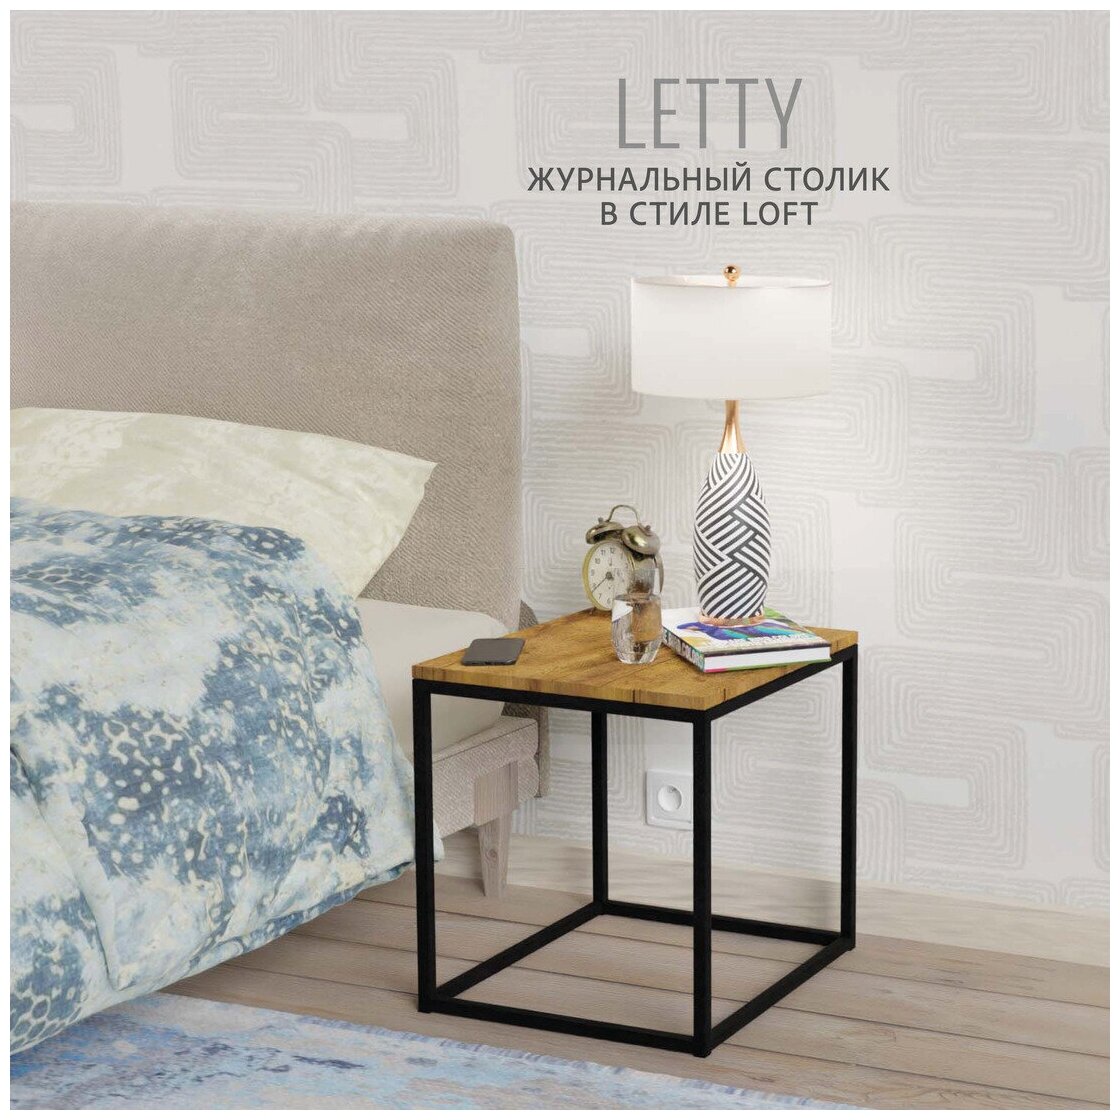 Журнальный столик LETTY Loft, 40х40х44 см, коричневый, Гростат